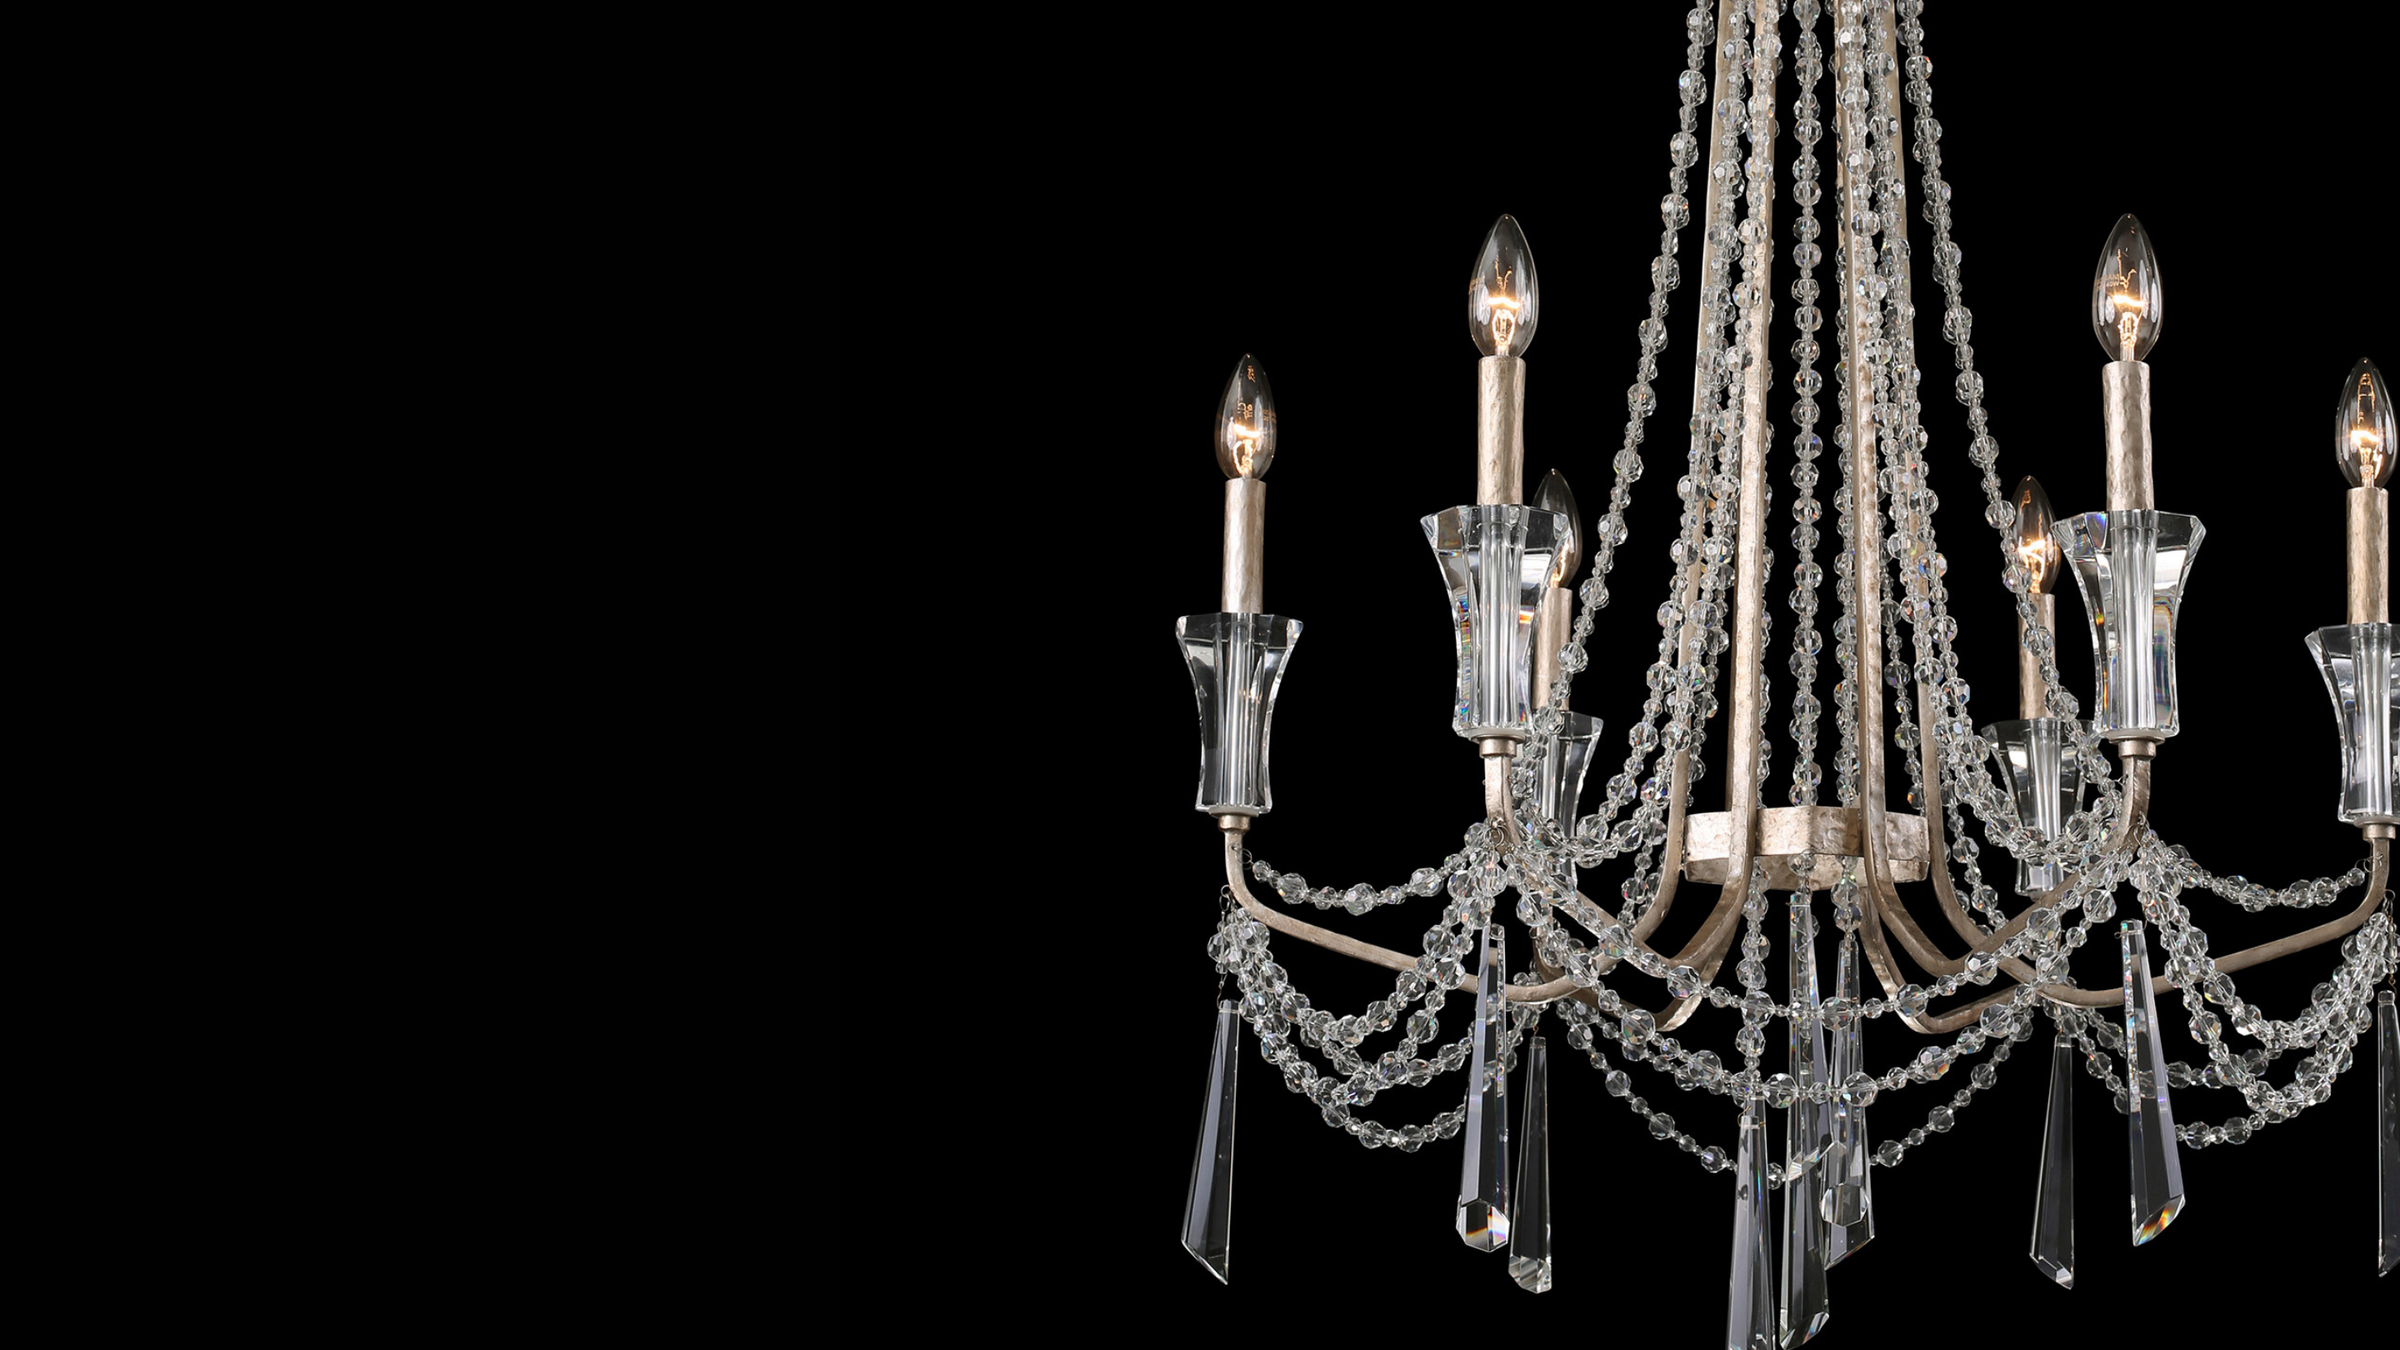 Barcelona chandelier up close image showing crystal detail against black background